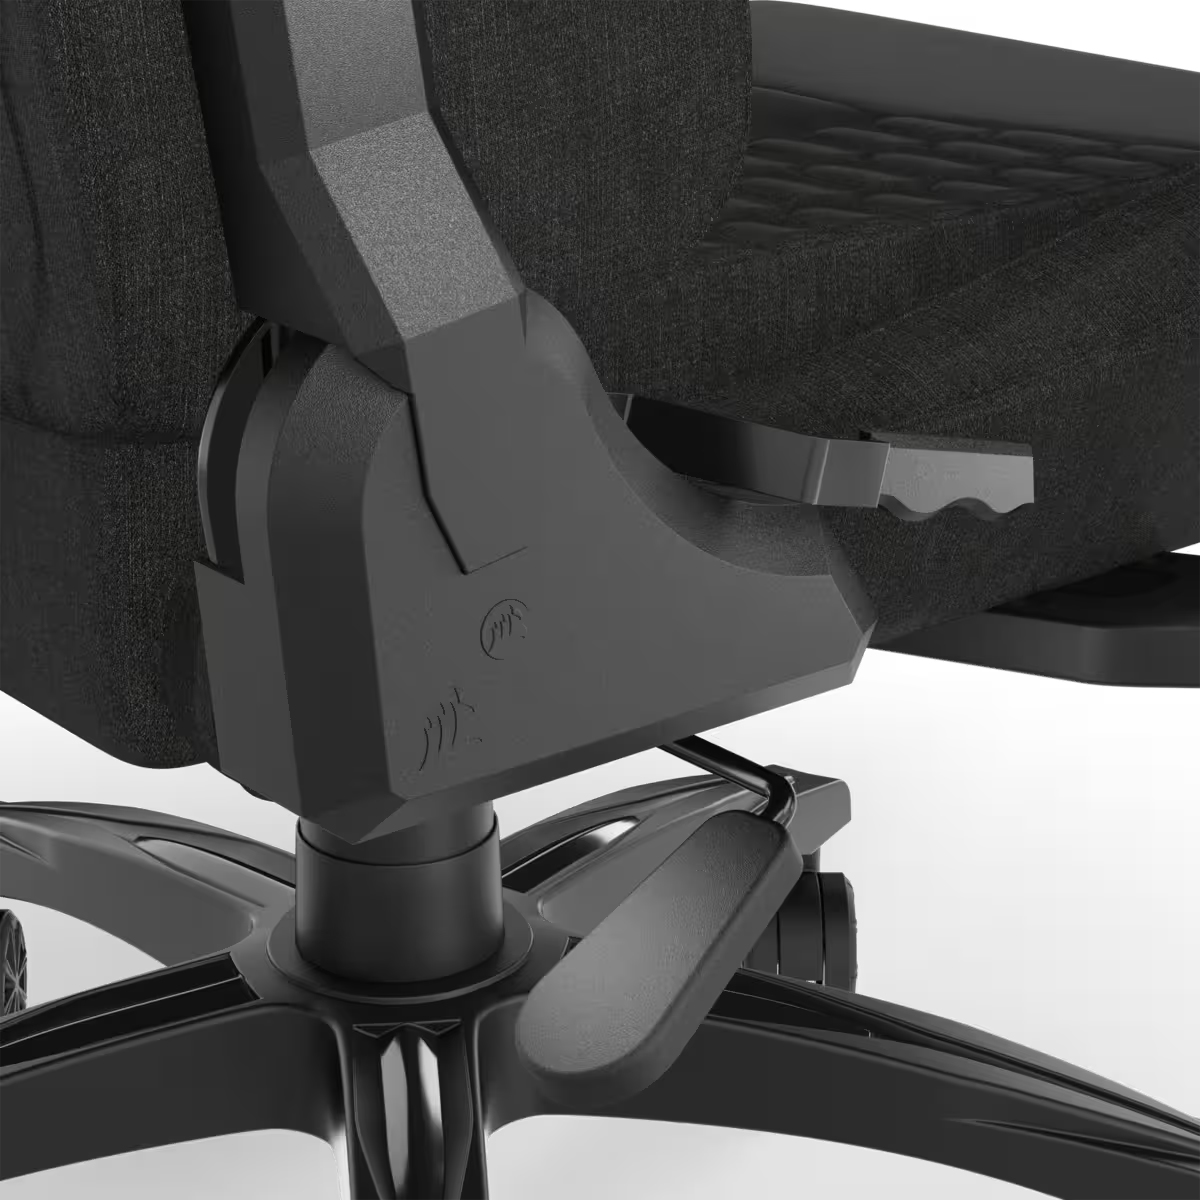 Corsair - Cadeira Gaming Corsair TC100 RELAXED - Tecido Preto/Preto